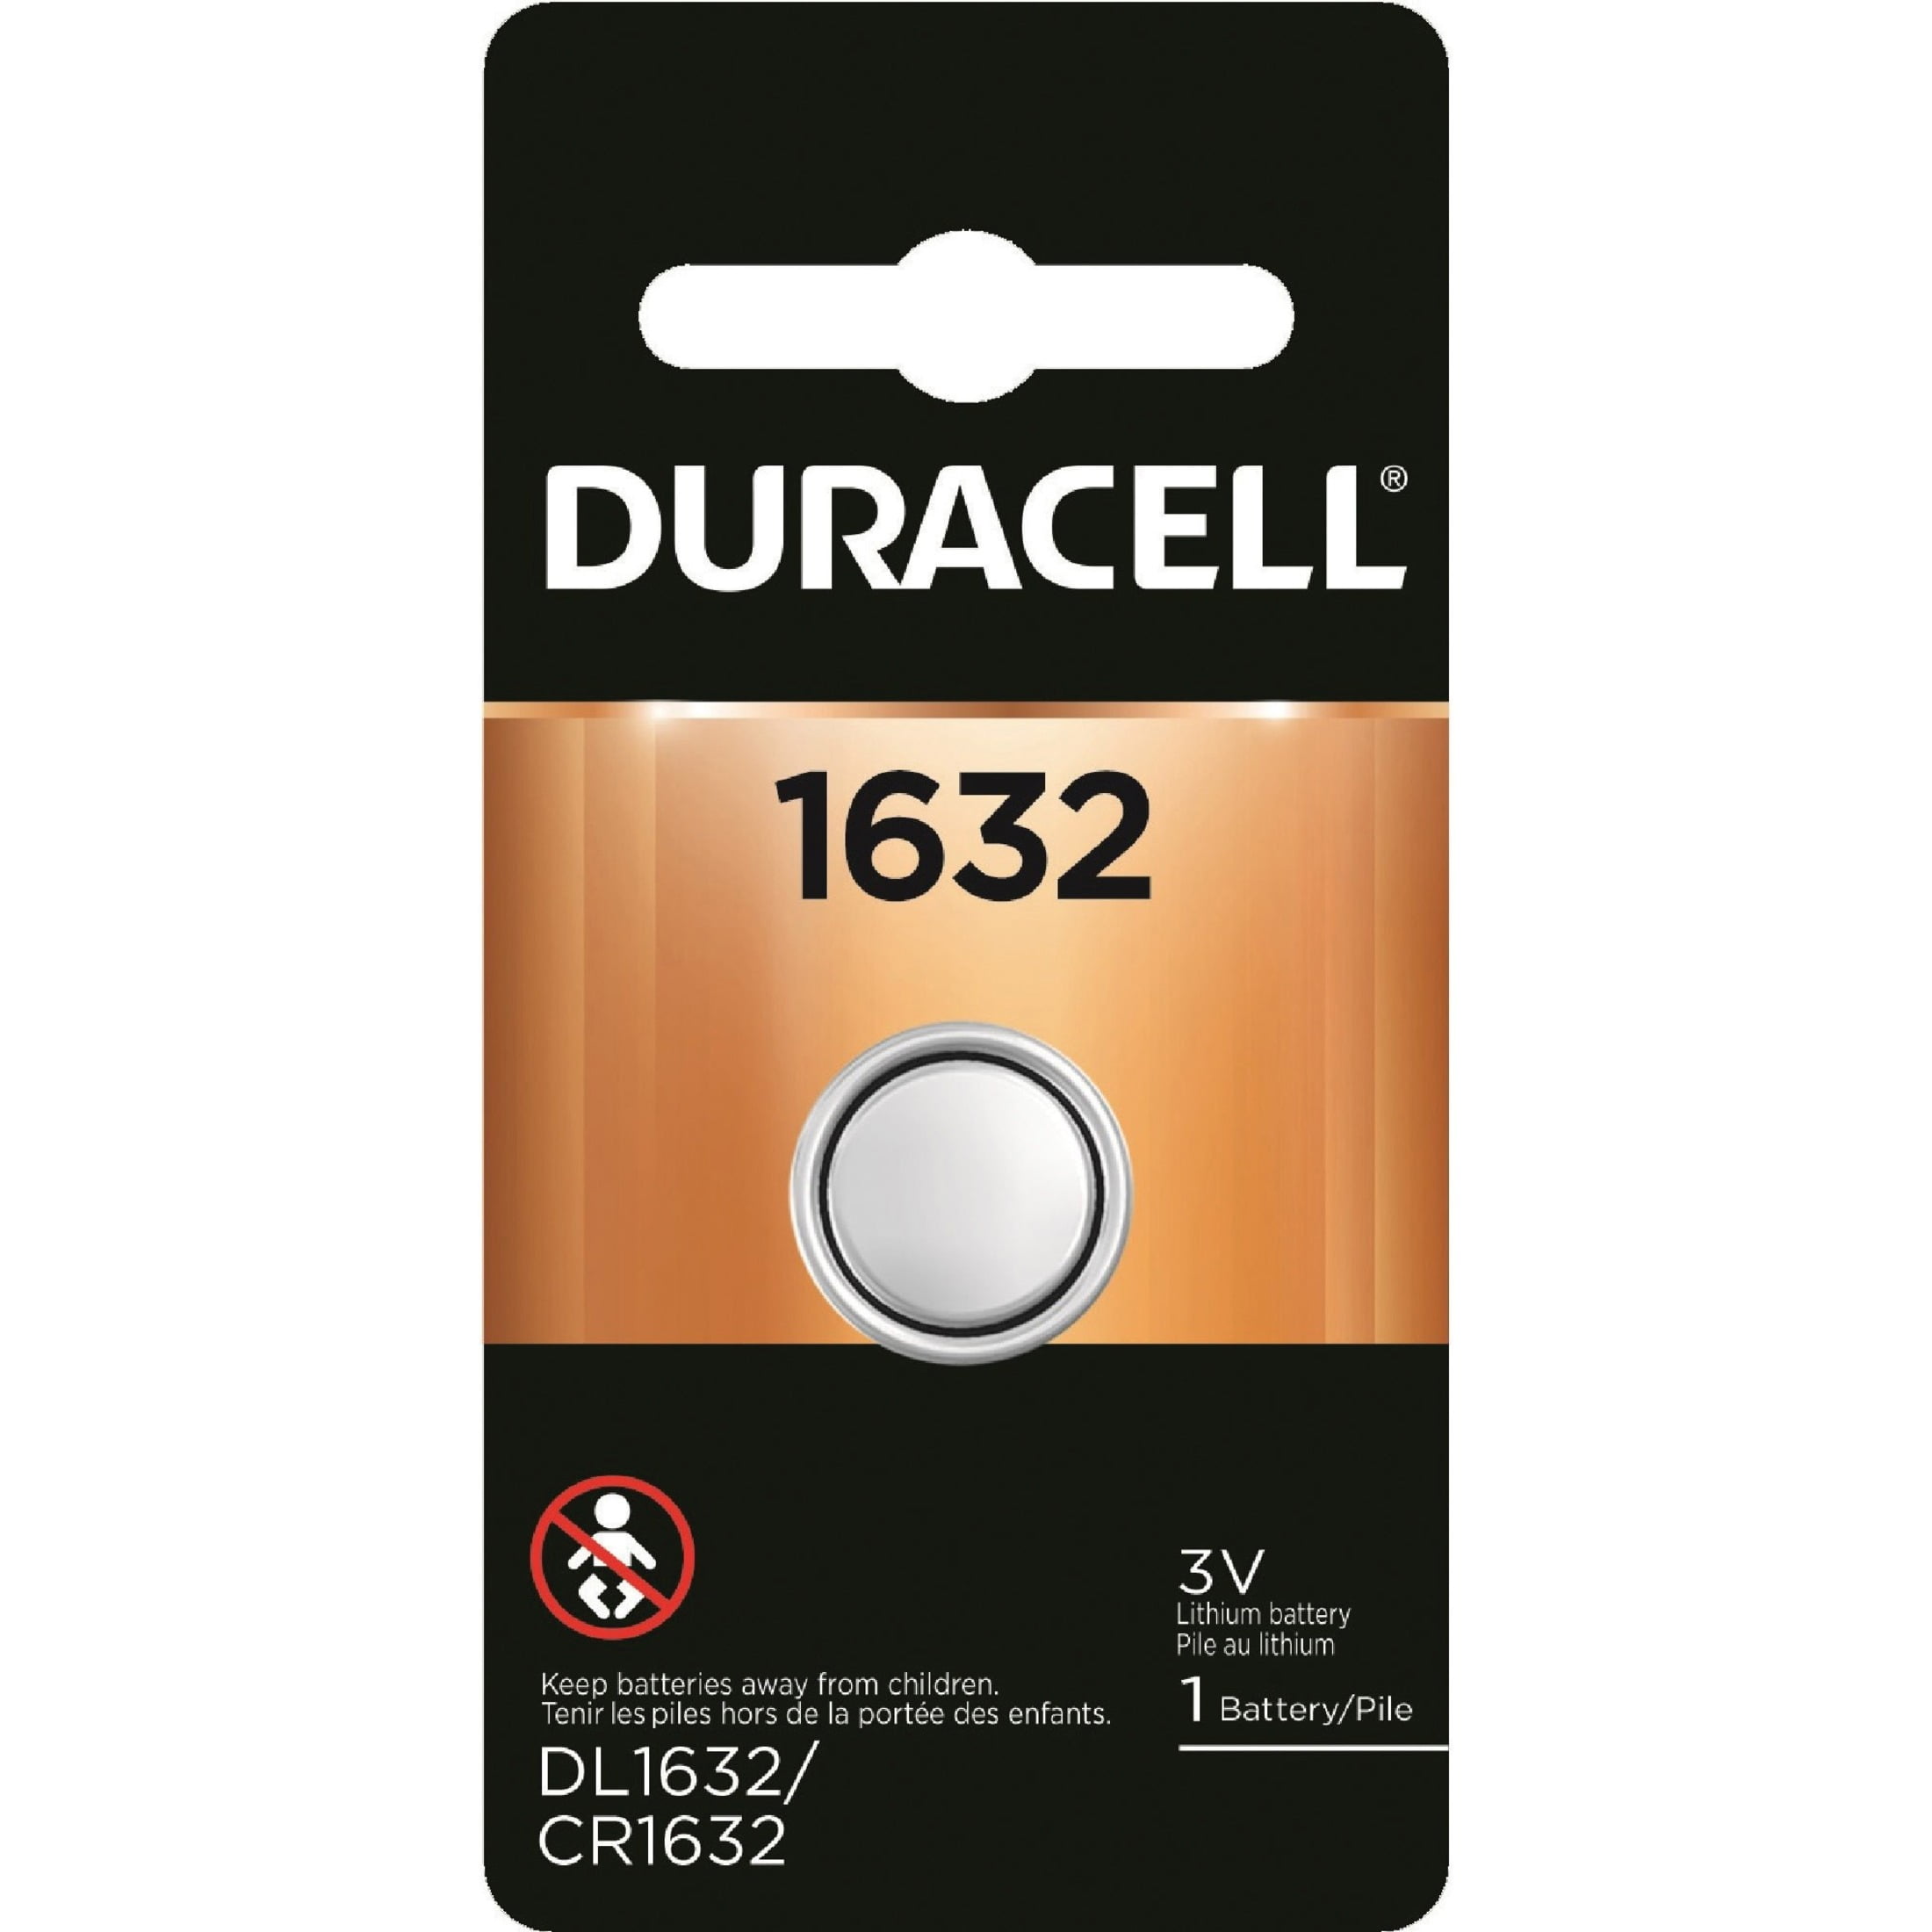 Beweegt niet zoete smaak gek Duracell DL1632 Lithium Coin Battery - Walmart.com